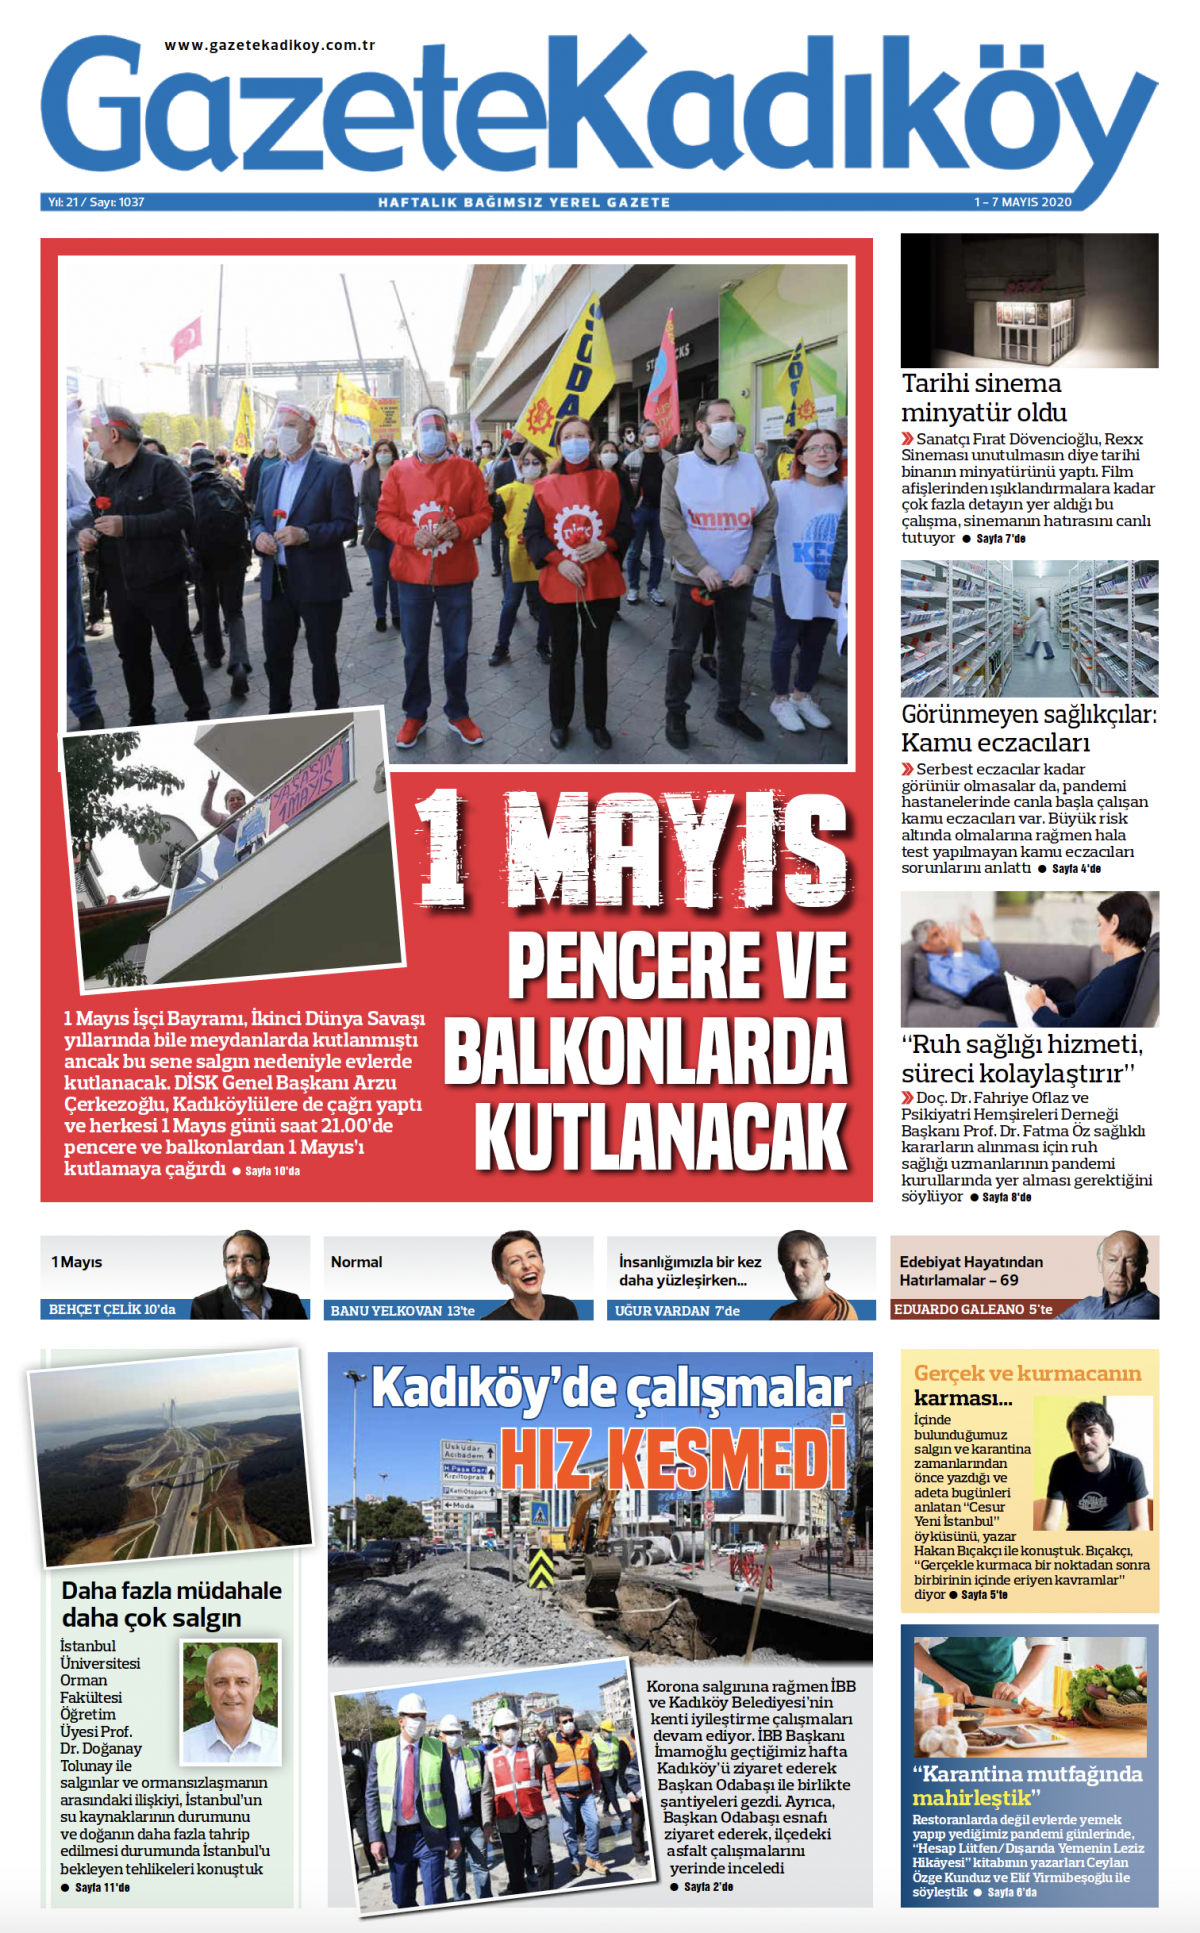 Gazete Kadıköy - 1037. Sayı